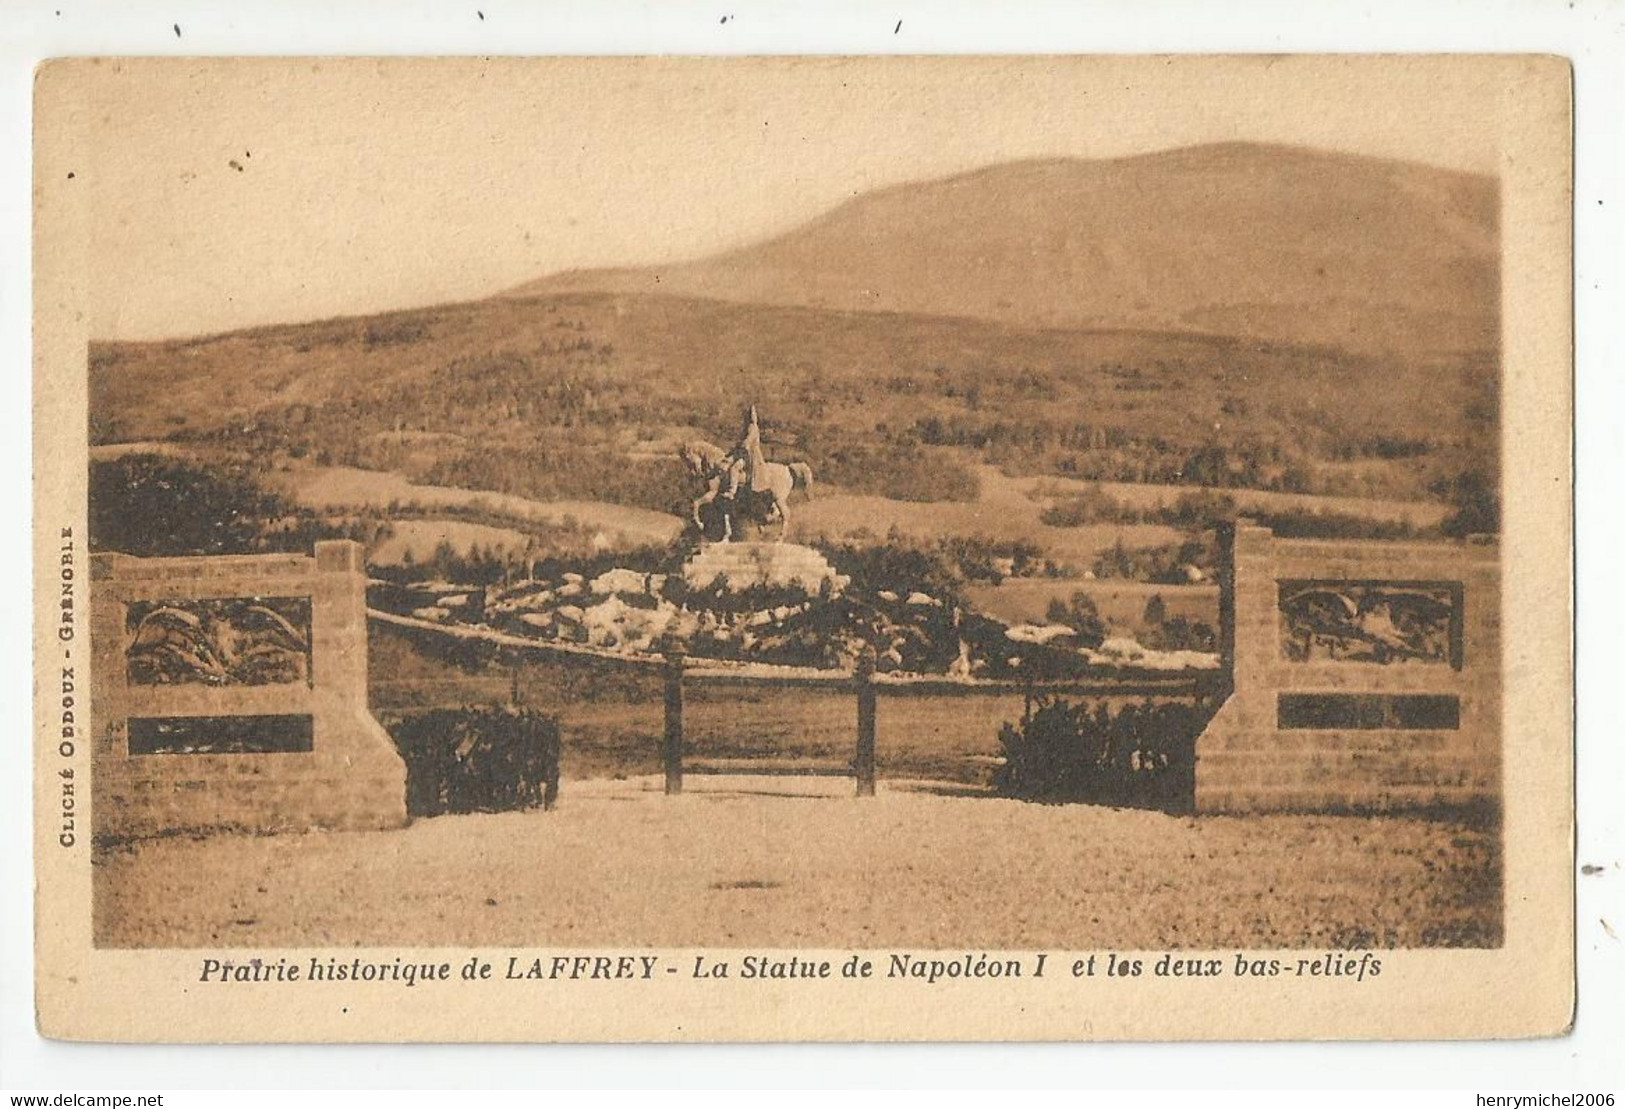 38 Isère Laffrey Prairie Historique La Statue Napoléon 1 Et Les Deux Bas Reliefs 1932 Cliché Oddoux Grenoble - Laffrey